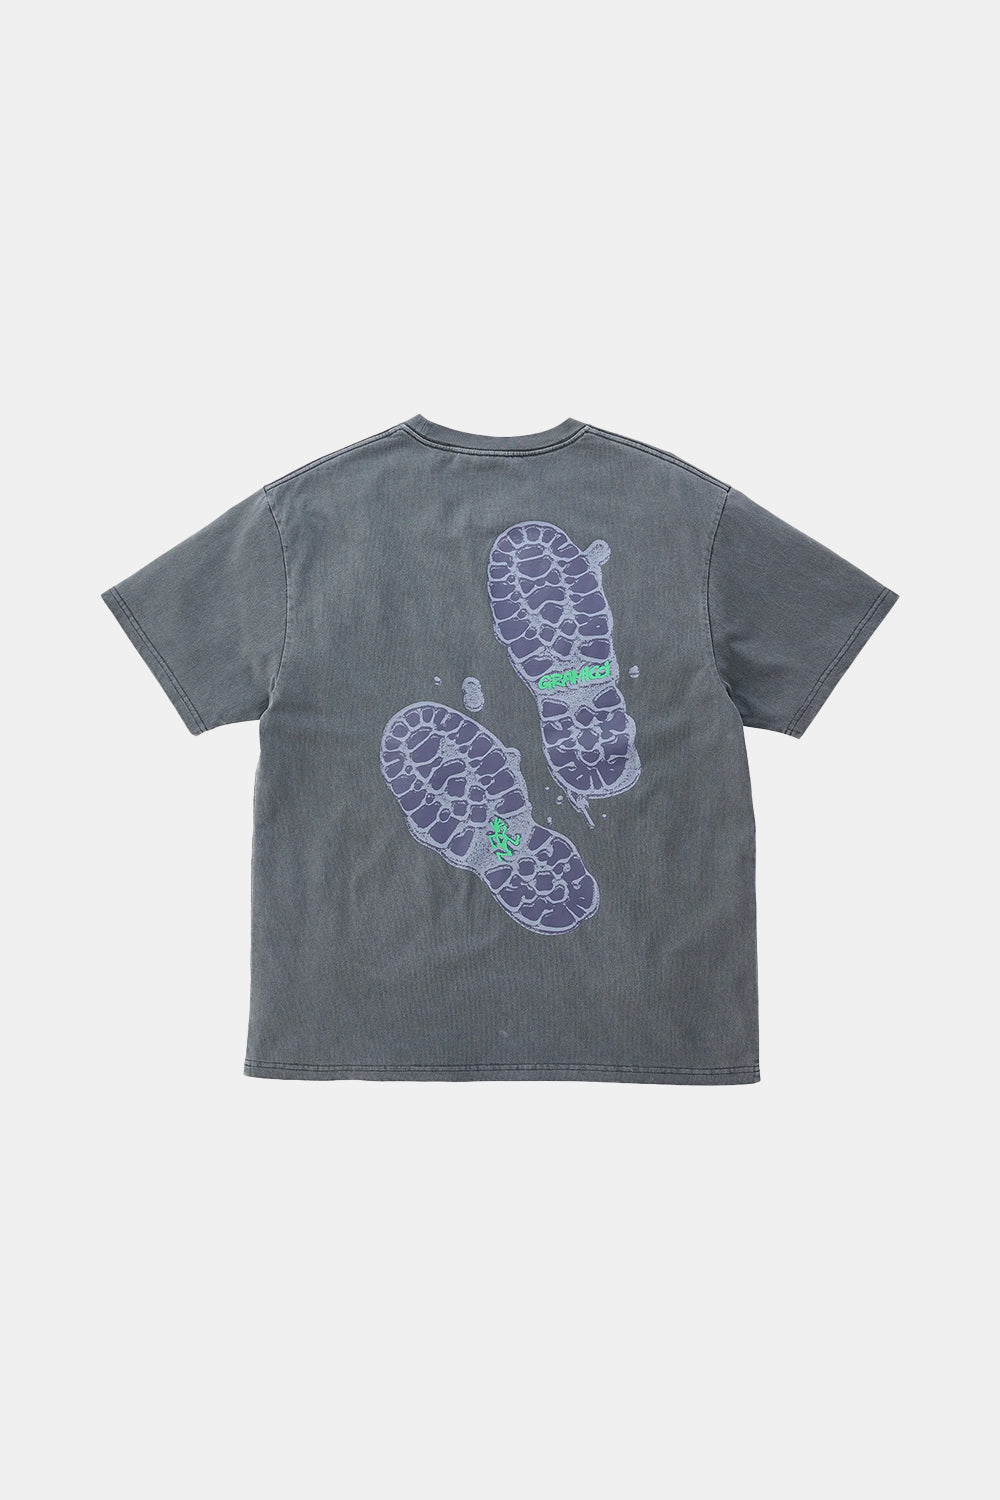 Gramicci Footprints T-Shirt (Grey Pigment)
